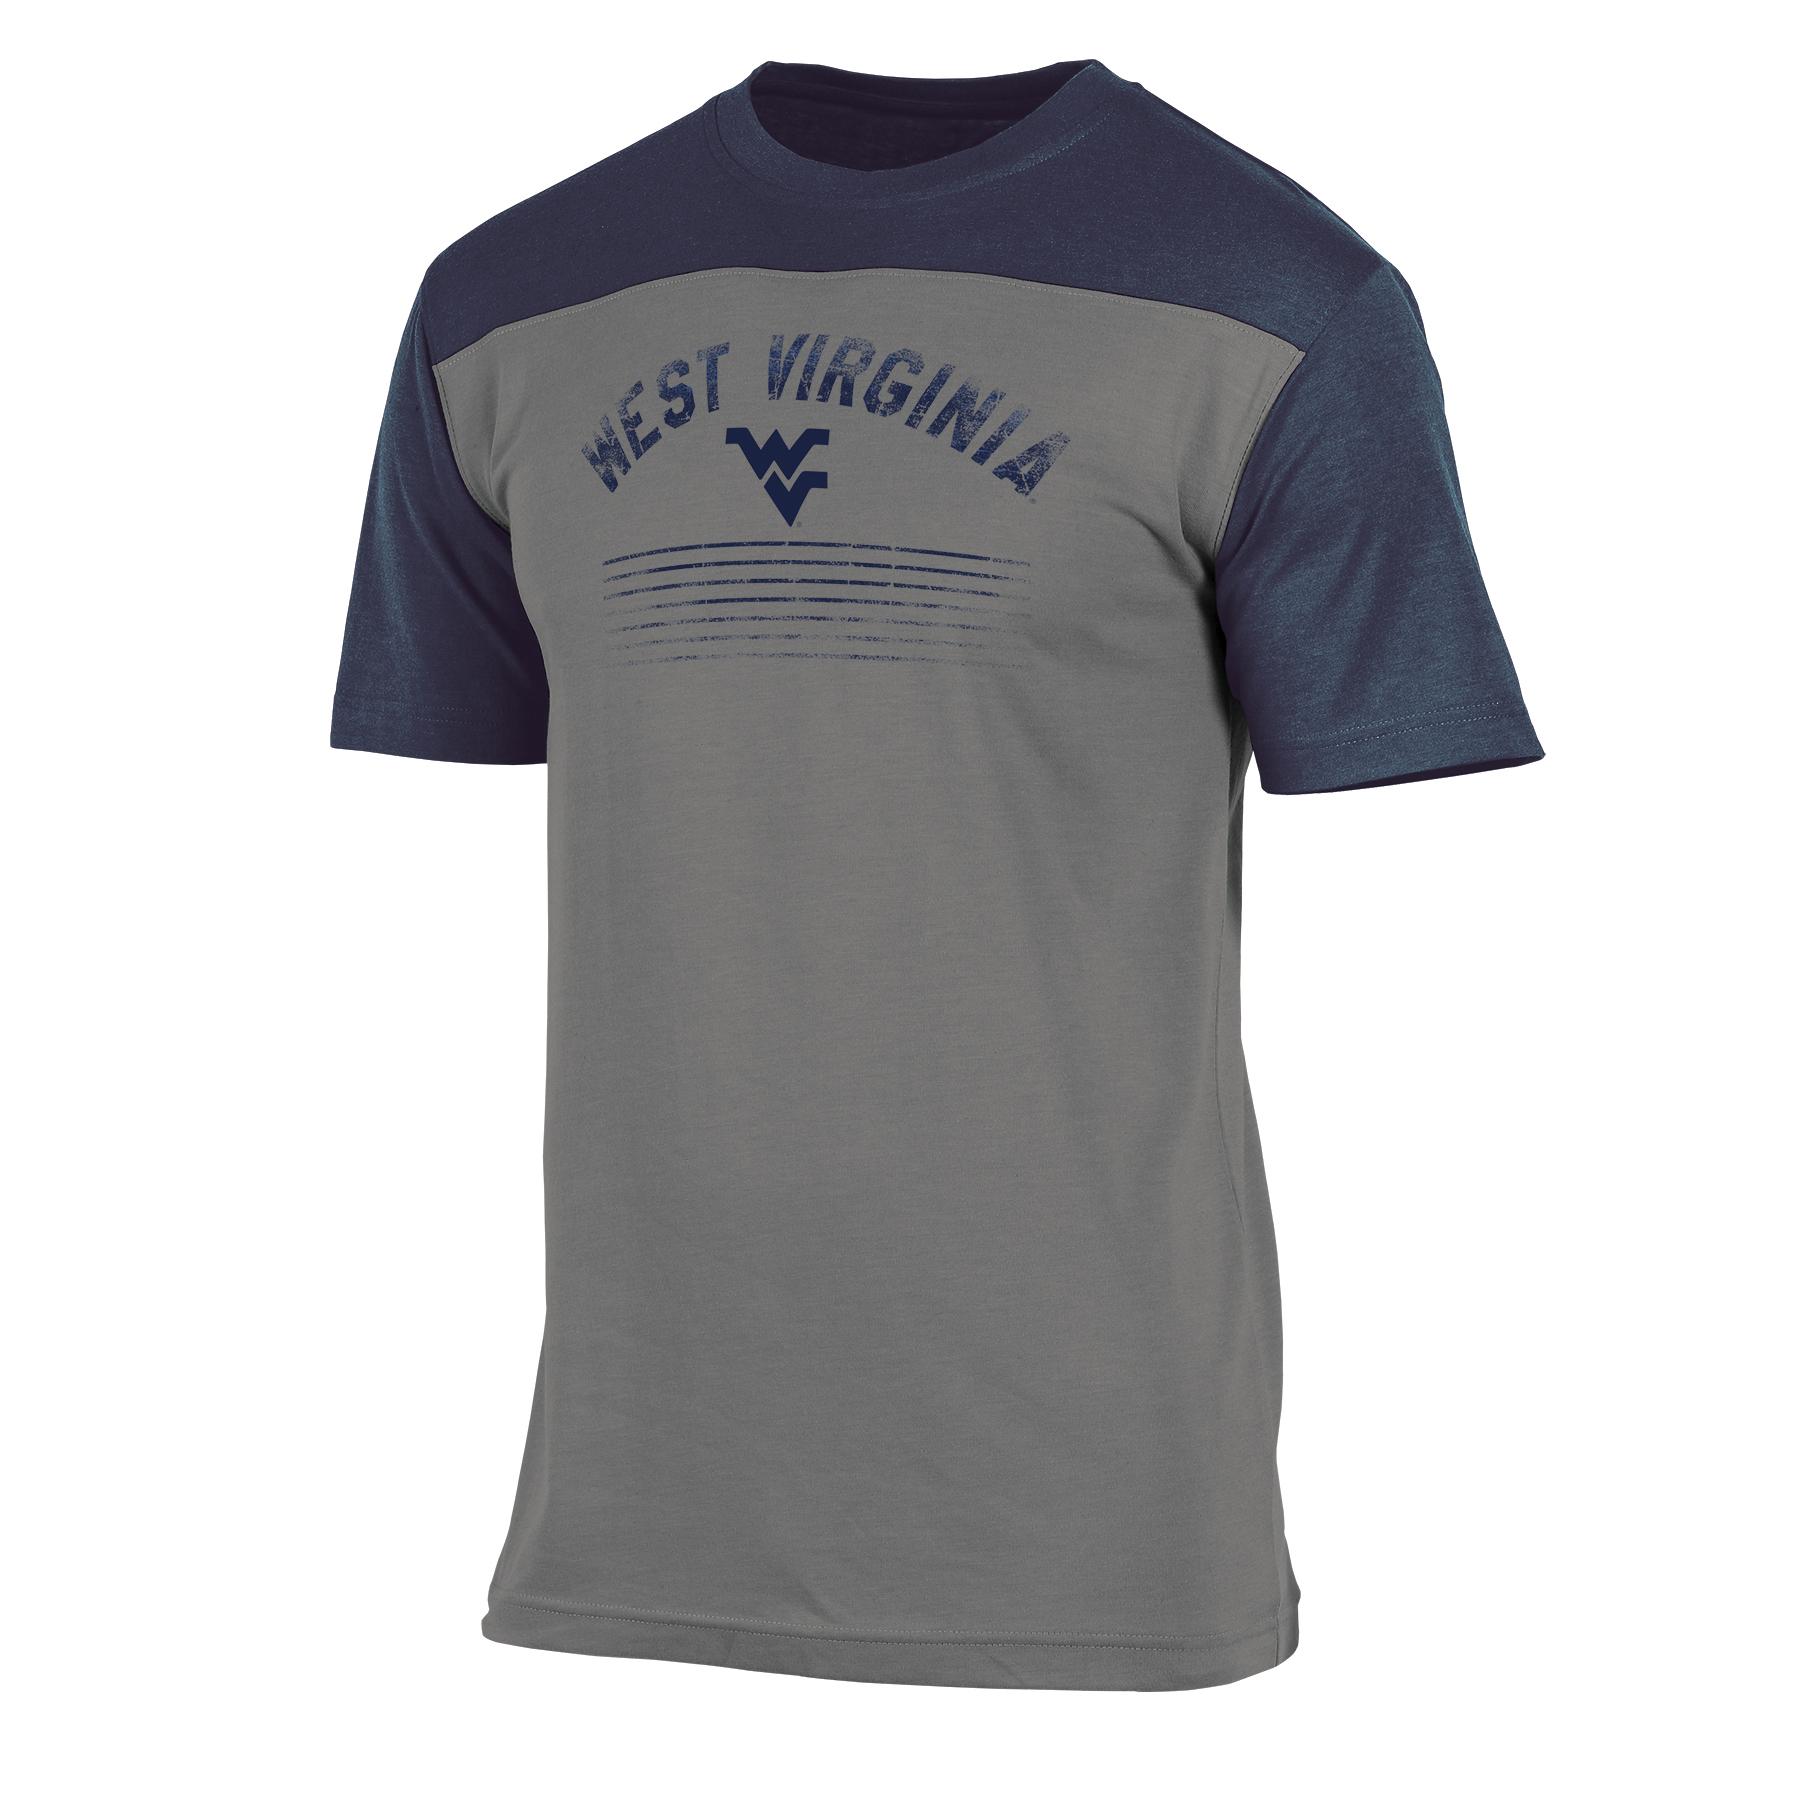 NCAA Men's Colorblock T-Shirt - West Virginia Mountaineers